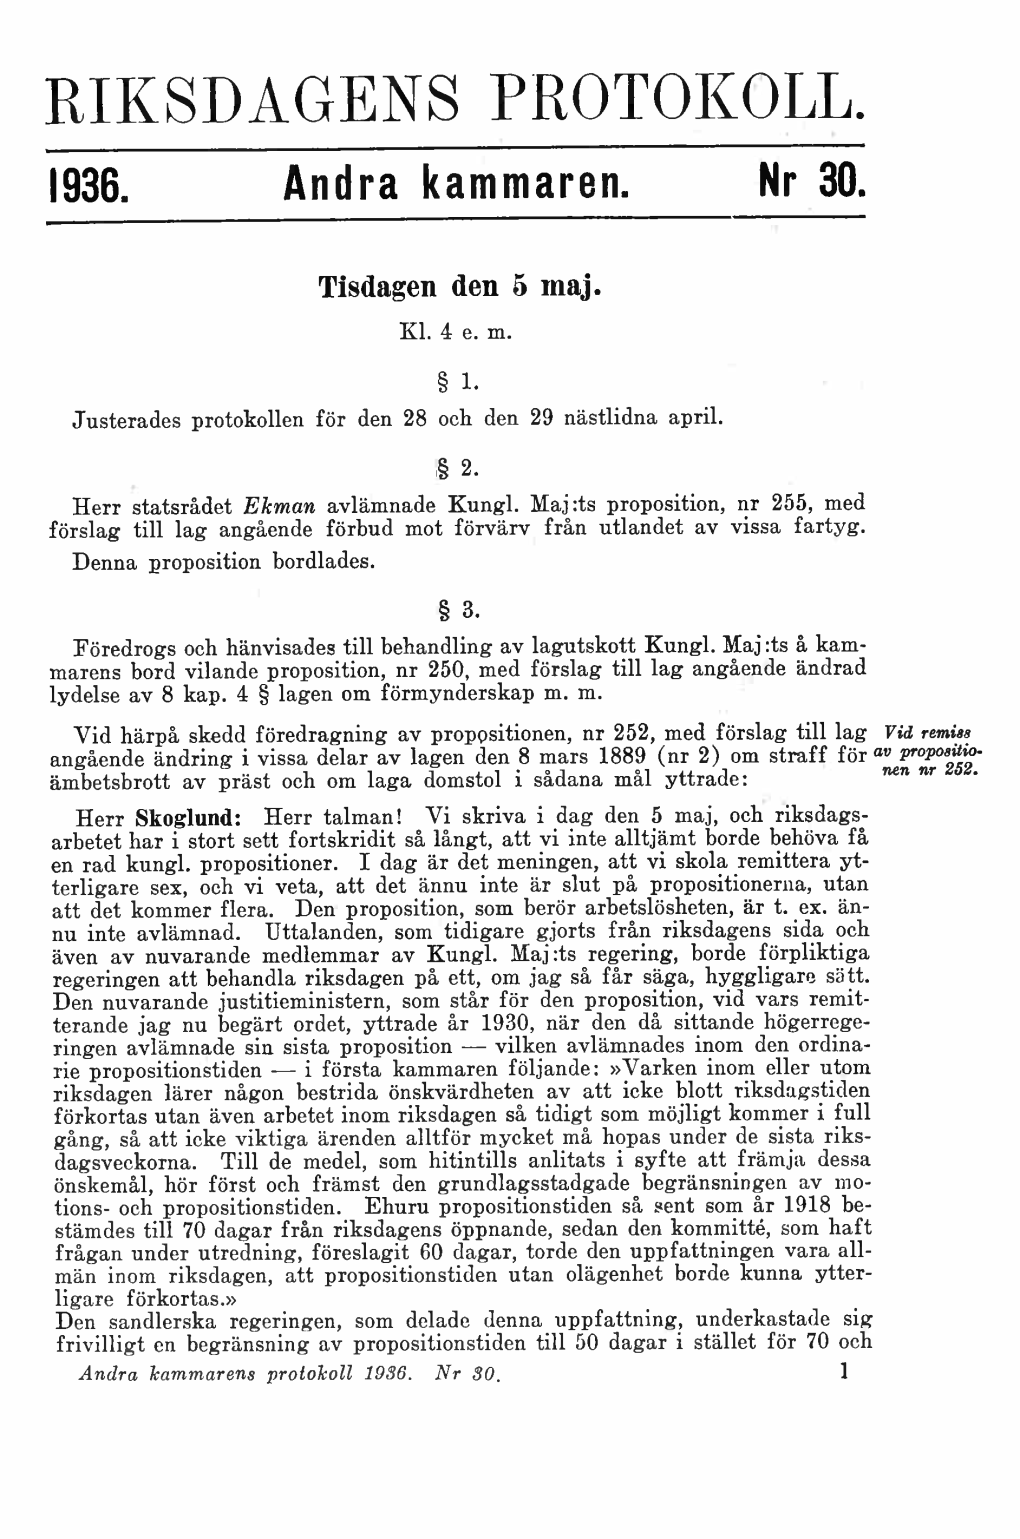 Riksdagens Protokoll 1936